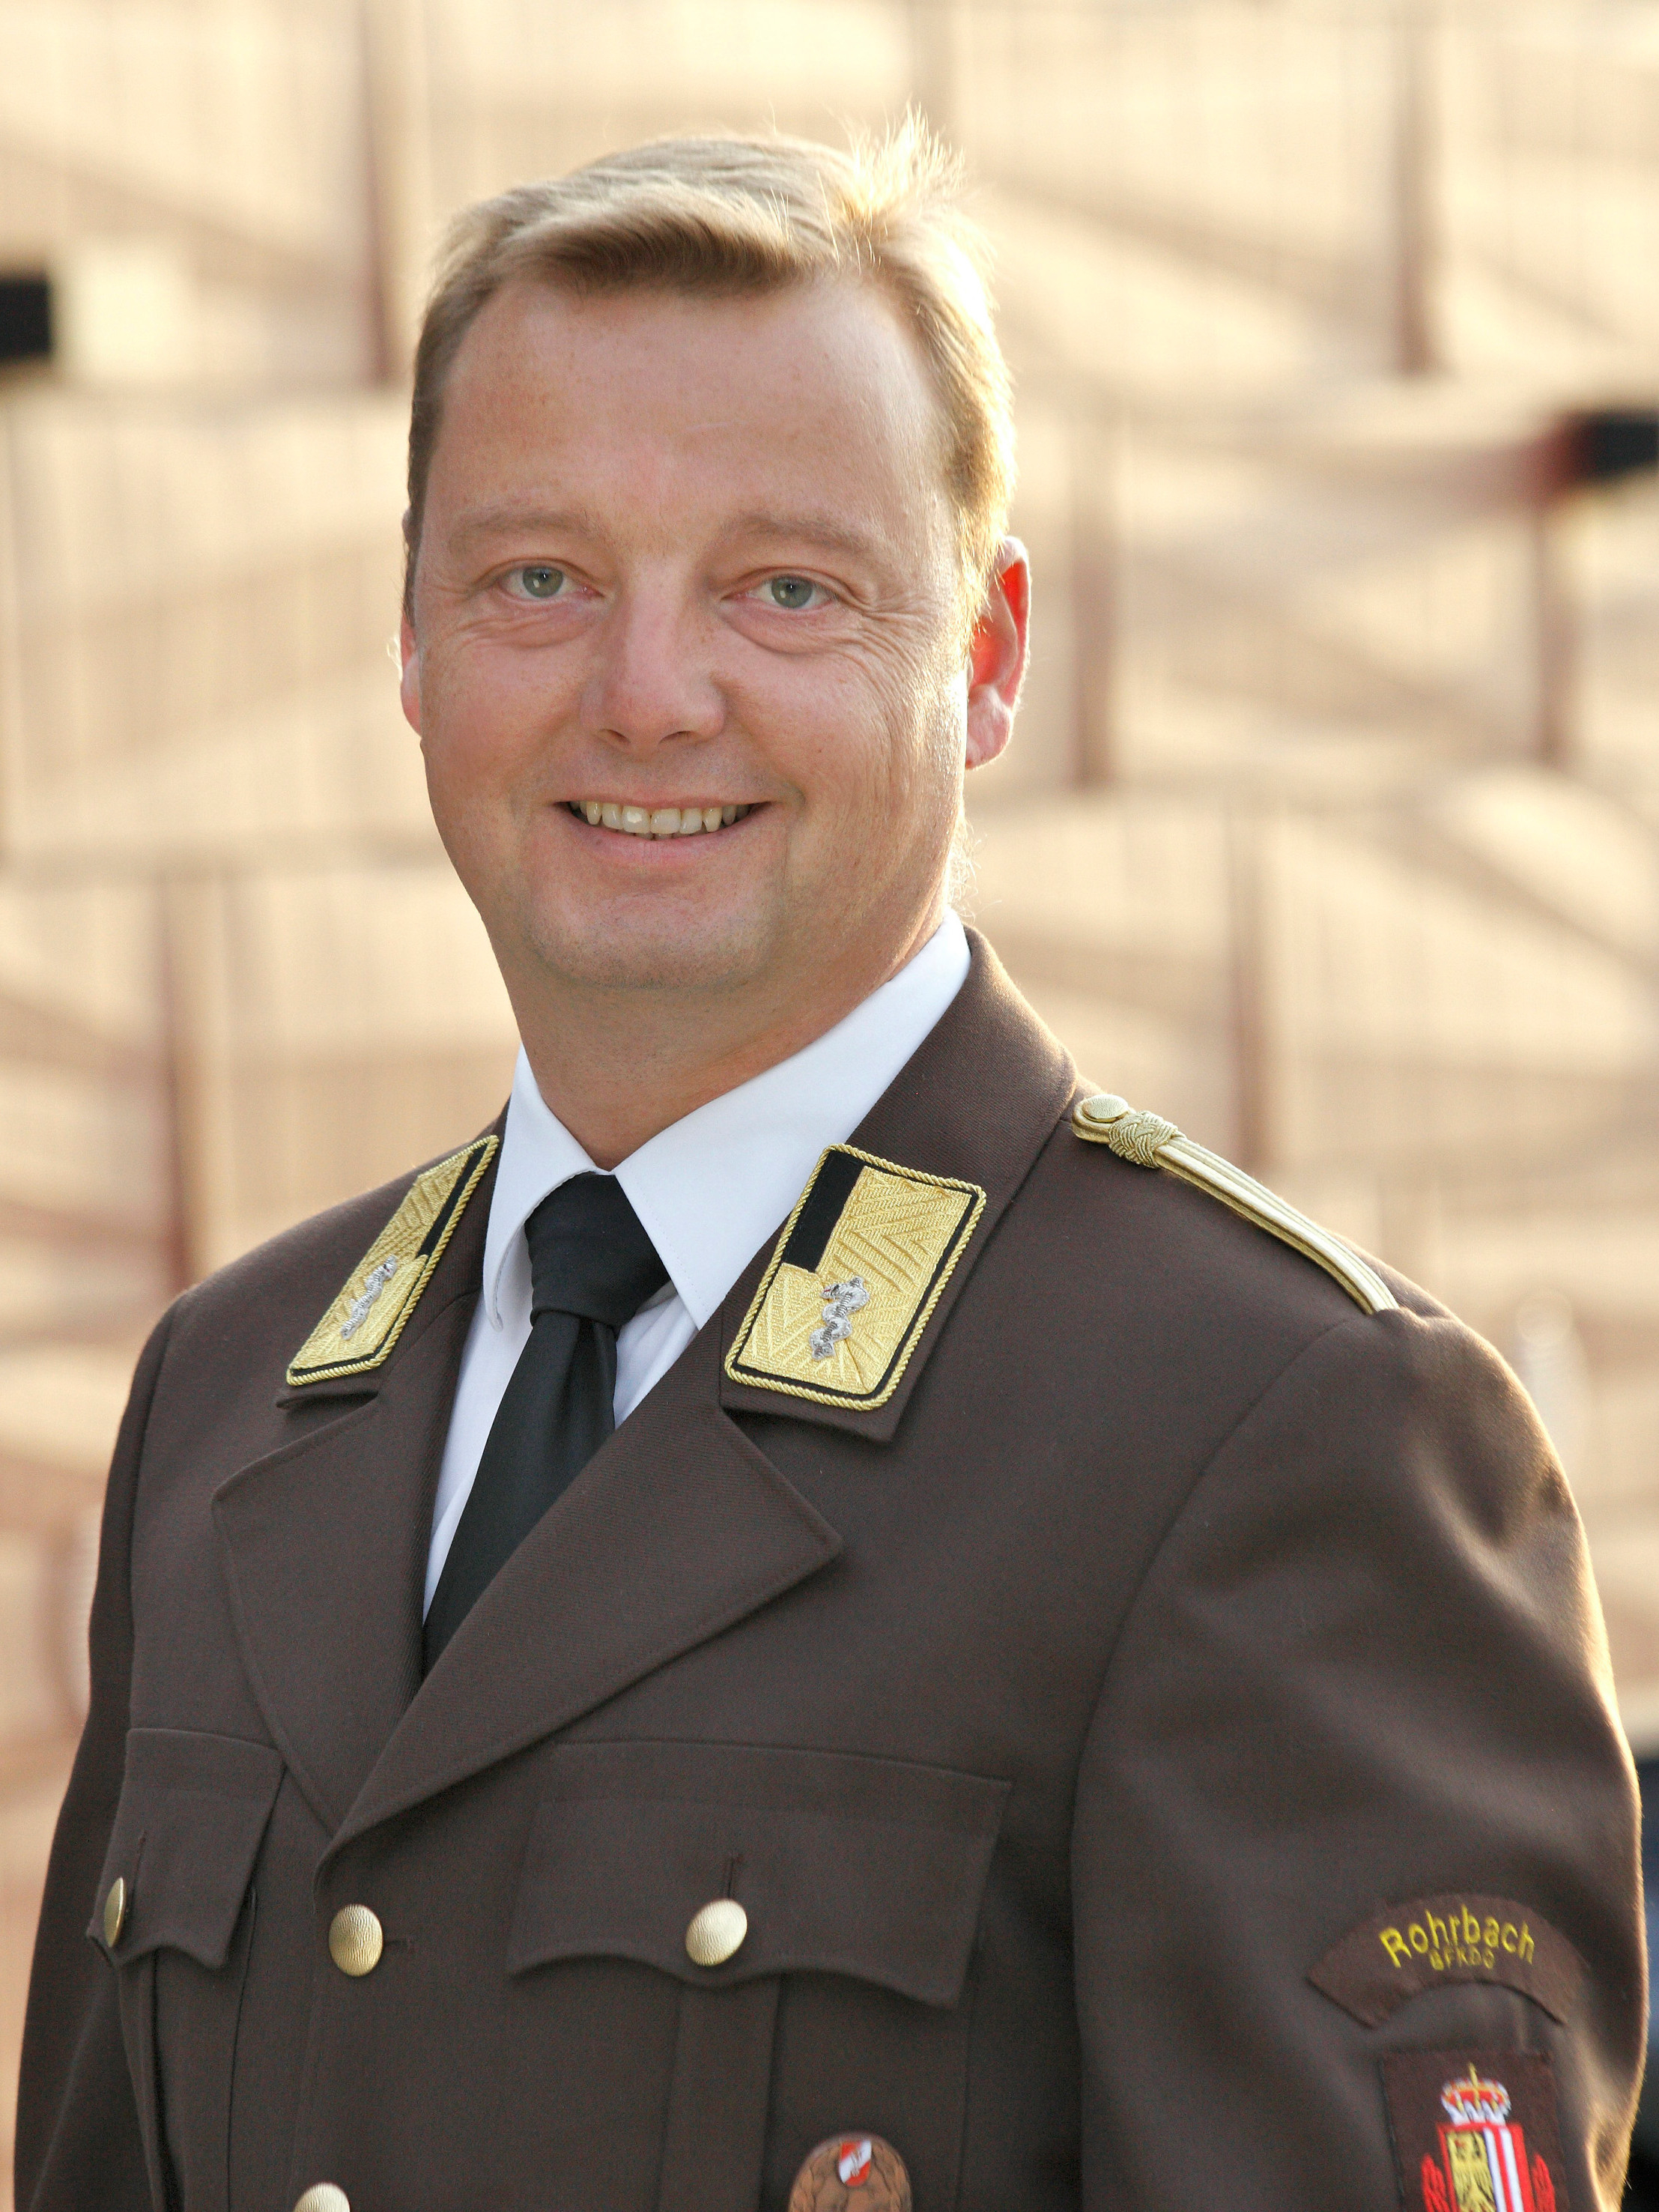 Ingmar Aigner